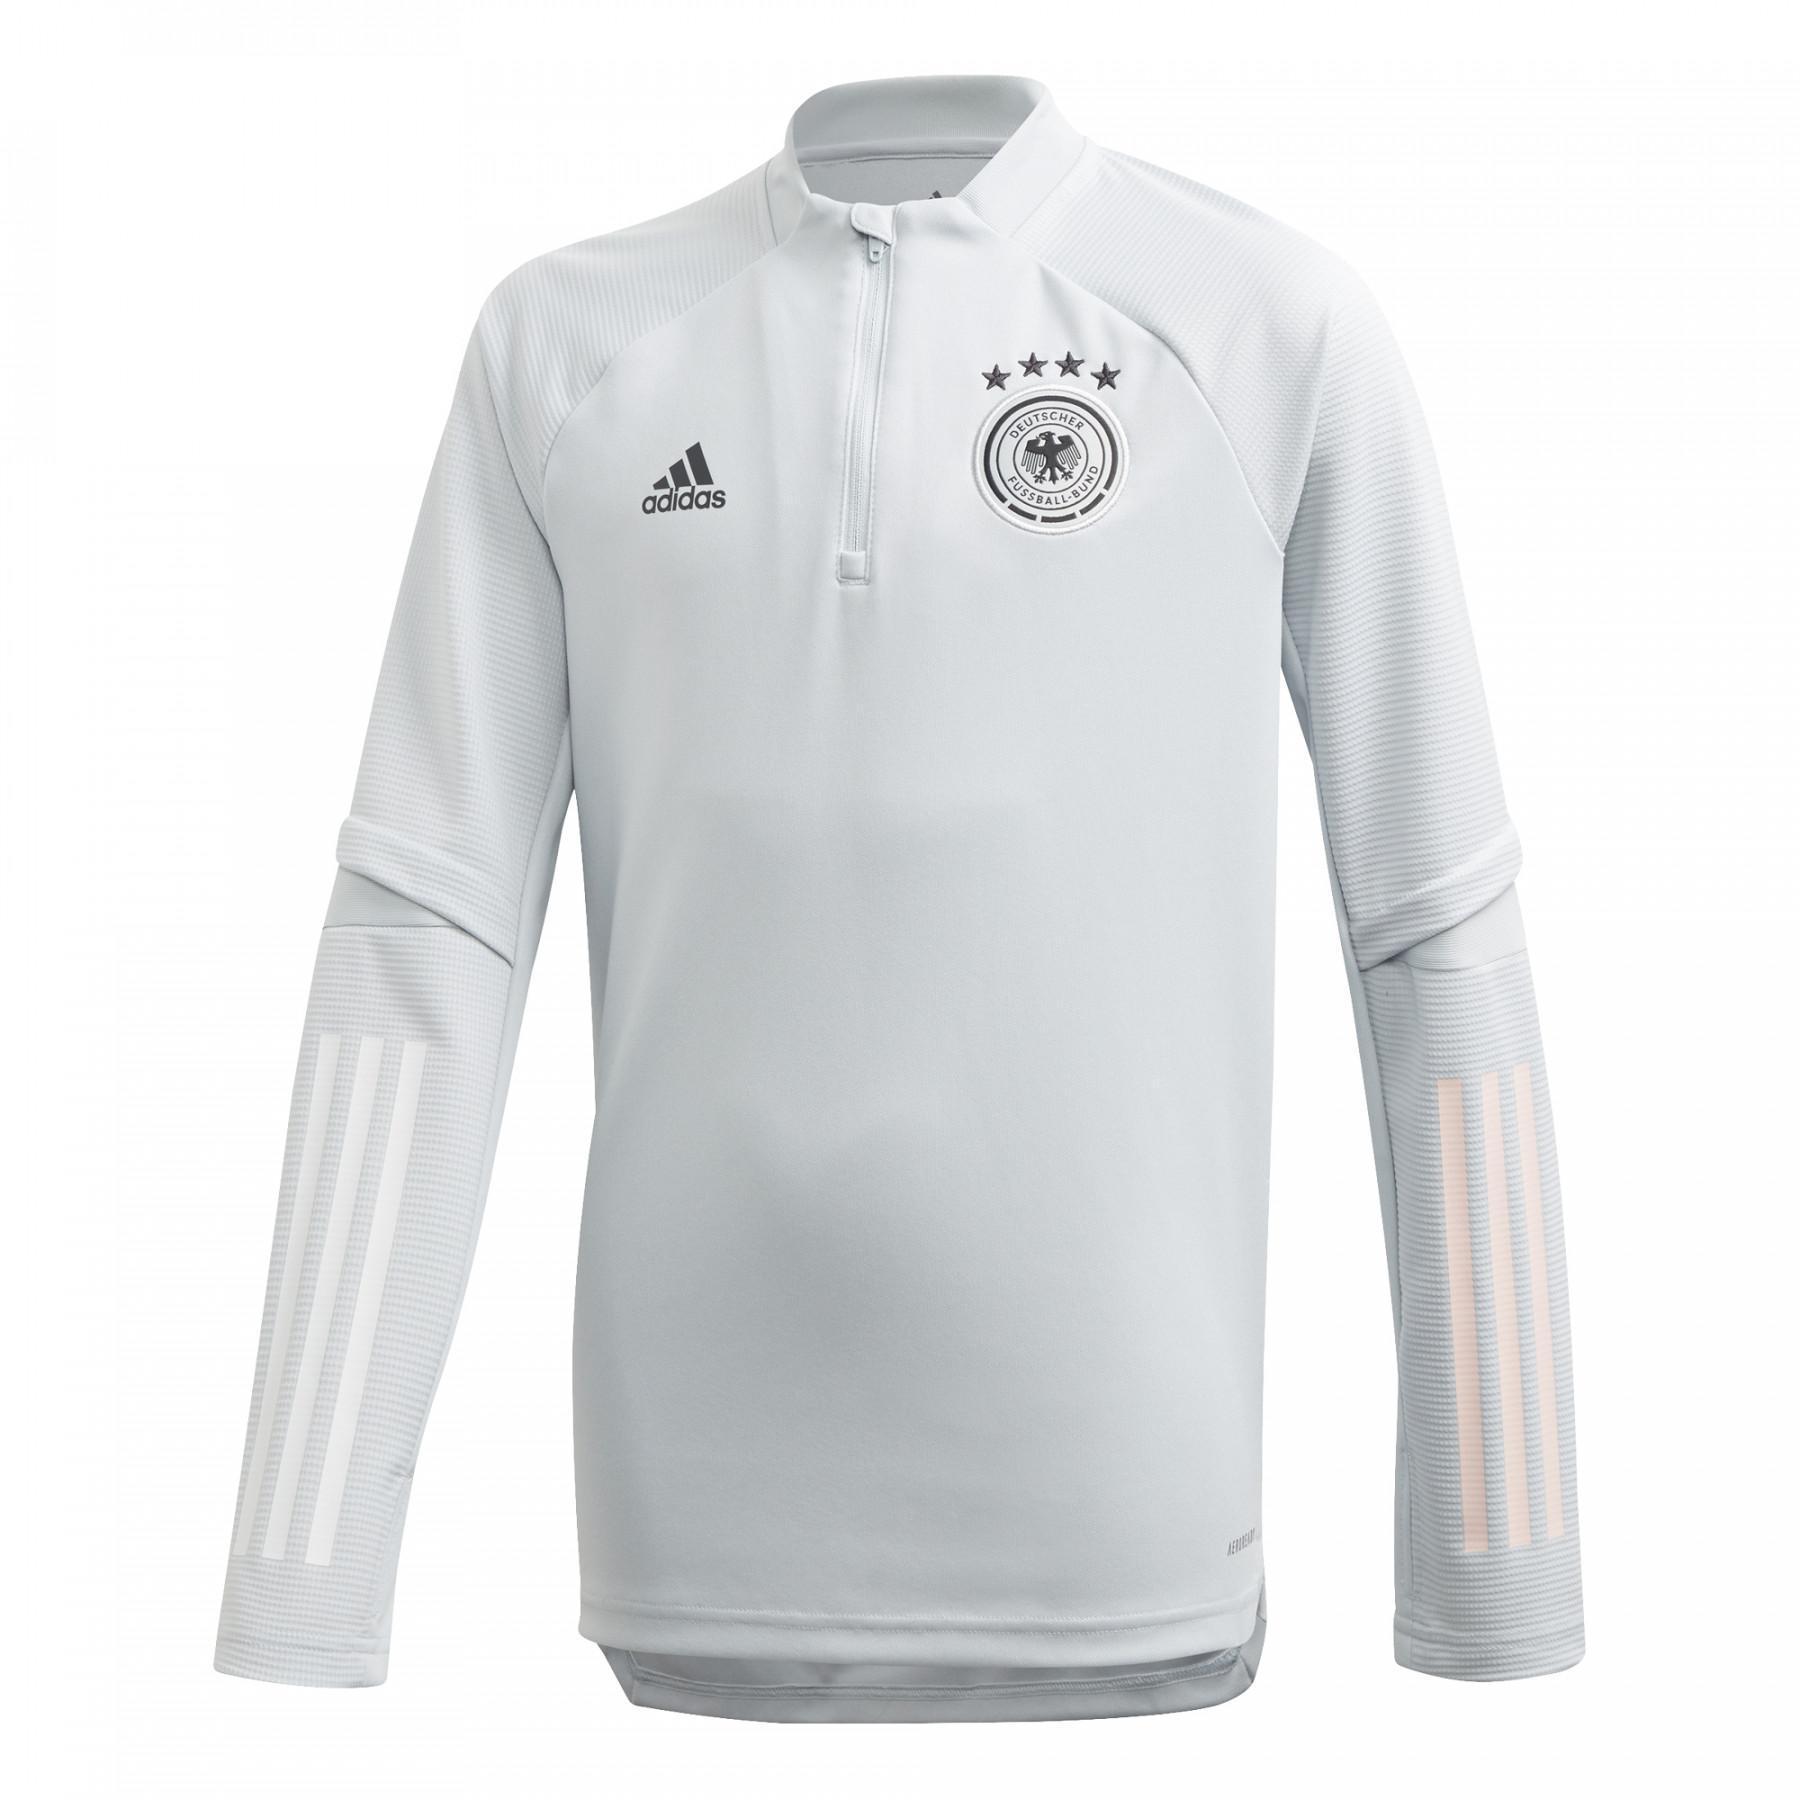 Camiseta de entrenamiento infantil 1/4 cremallera Alemania 2020